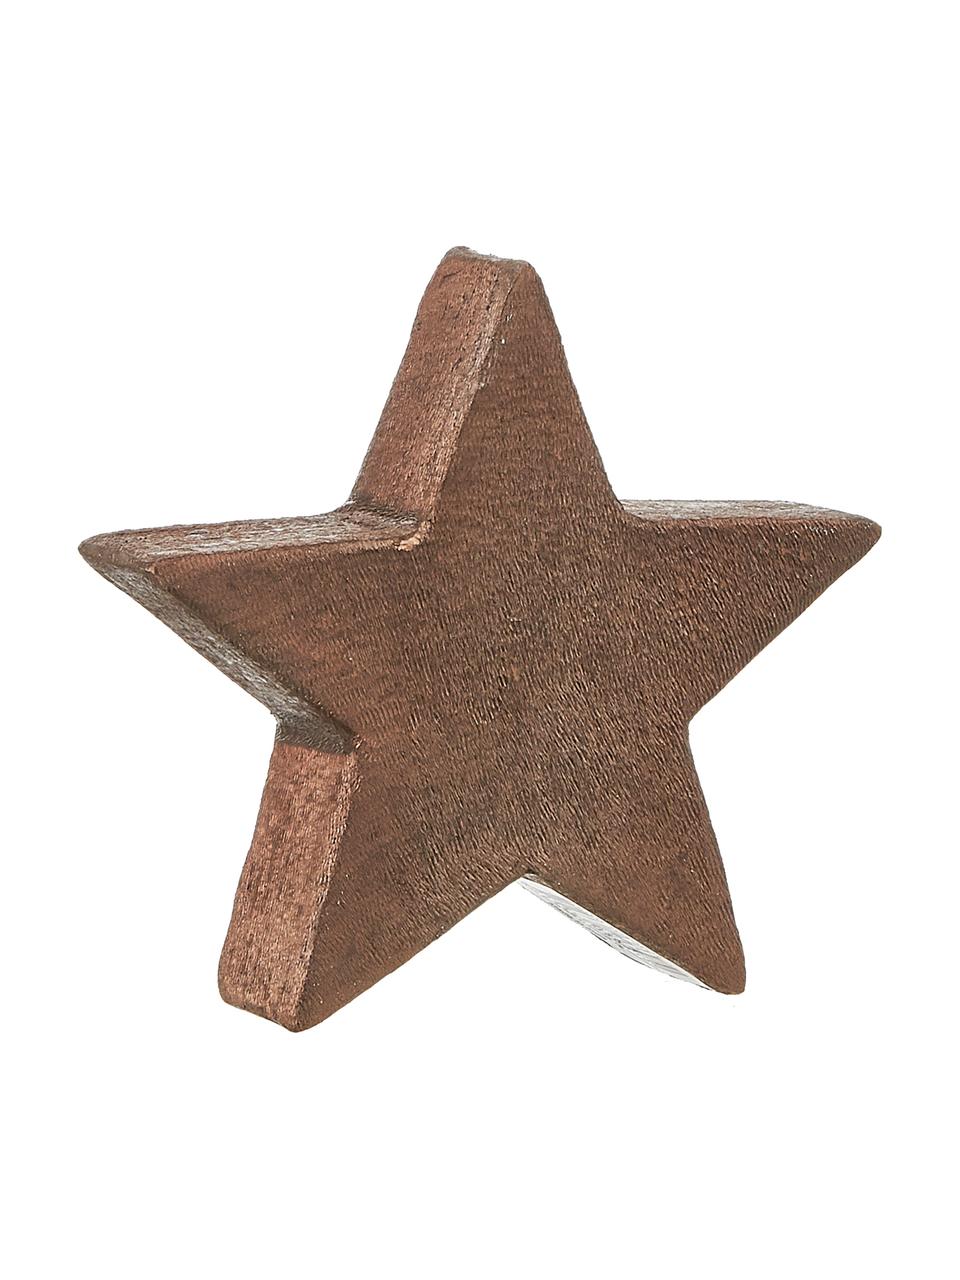 Dekorácia Mace-Star, Hnedá